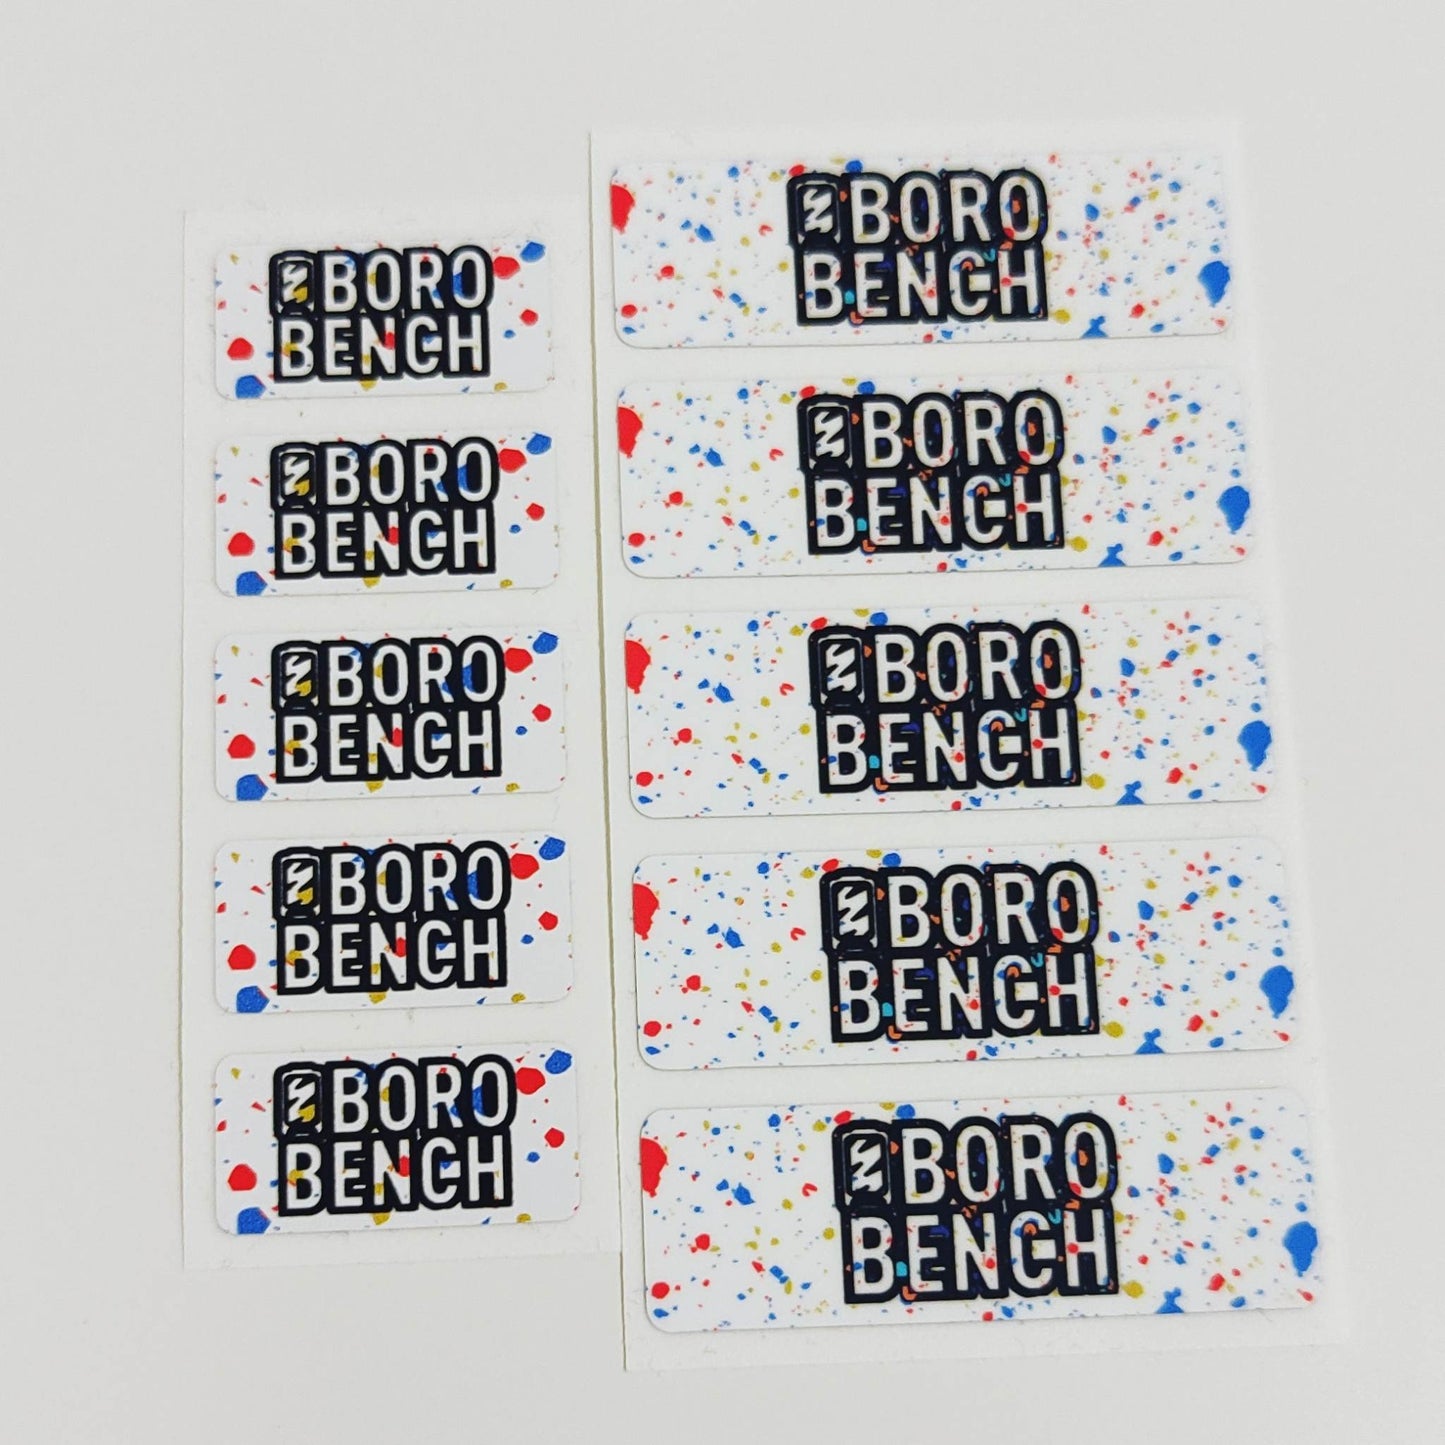 Boro Bench BB Void / Scuffie Sticker Pack